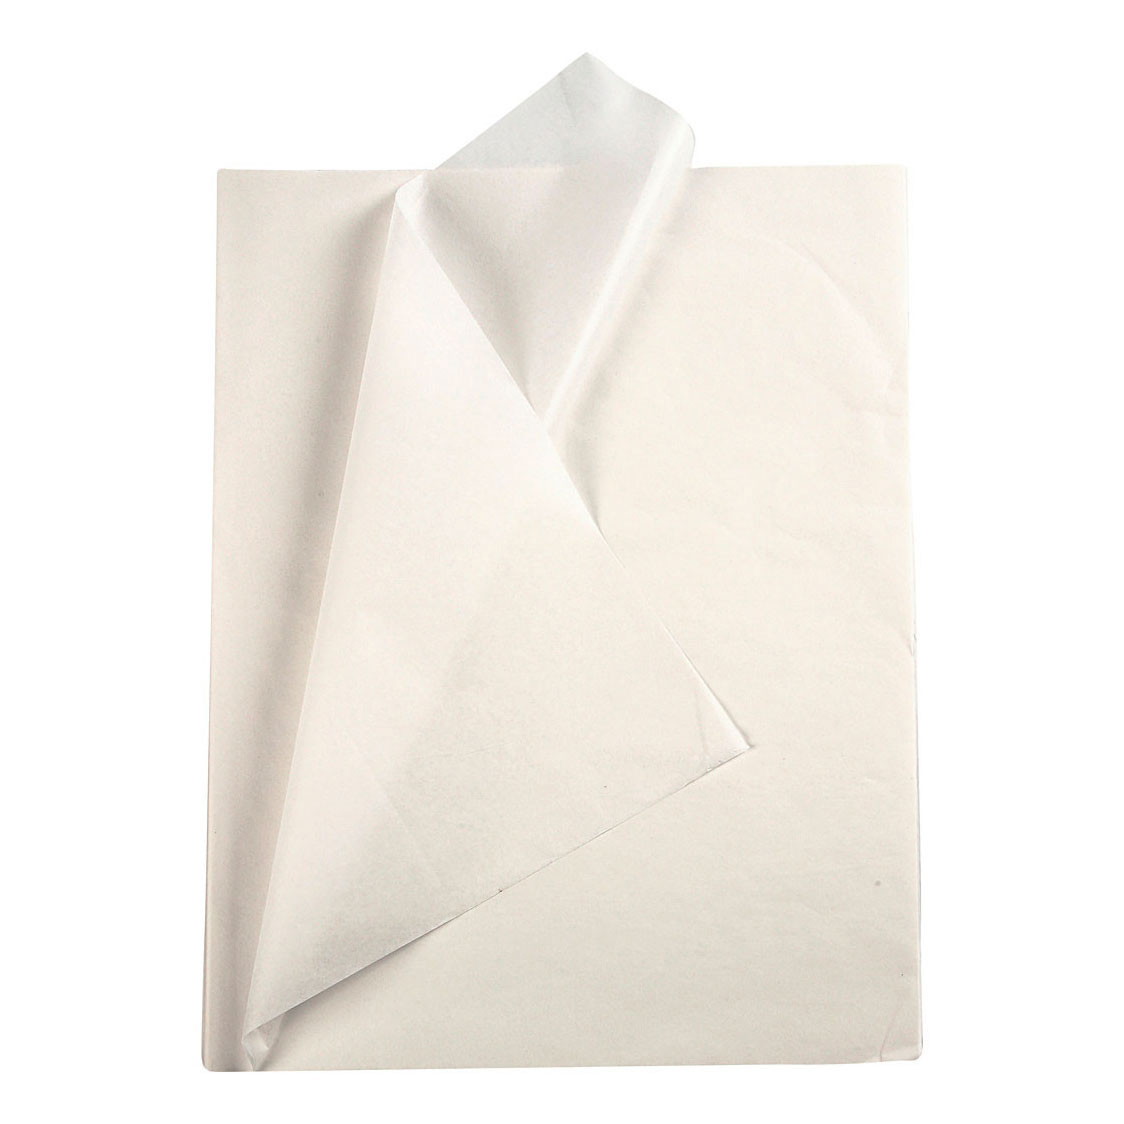 Seidenpapier Weiß 10 Blatt 14 gr, 50x70cm